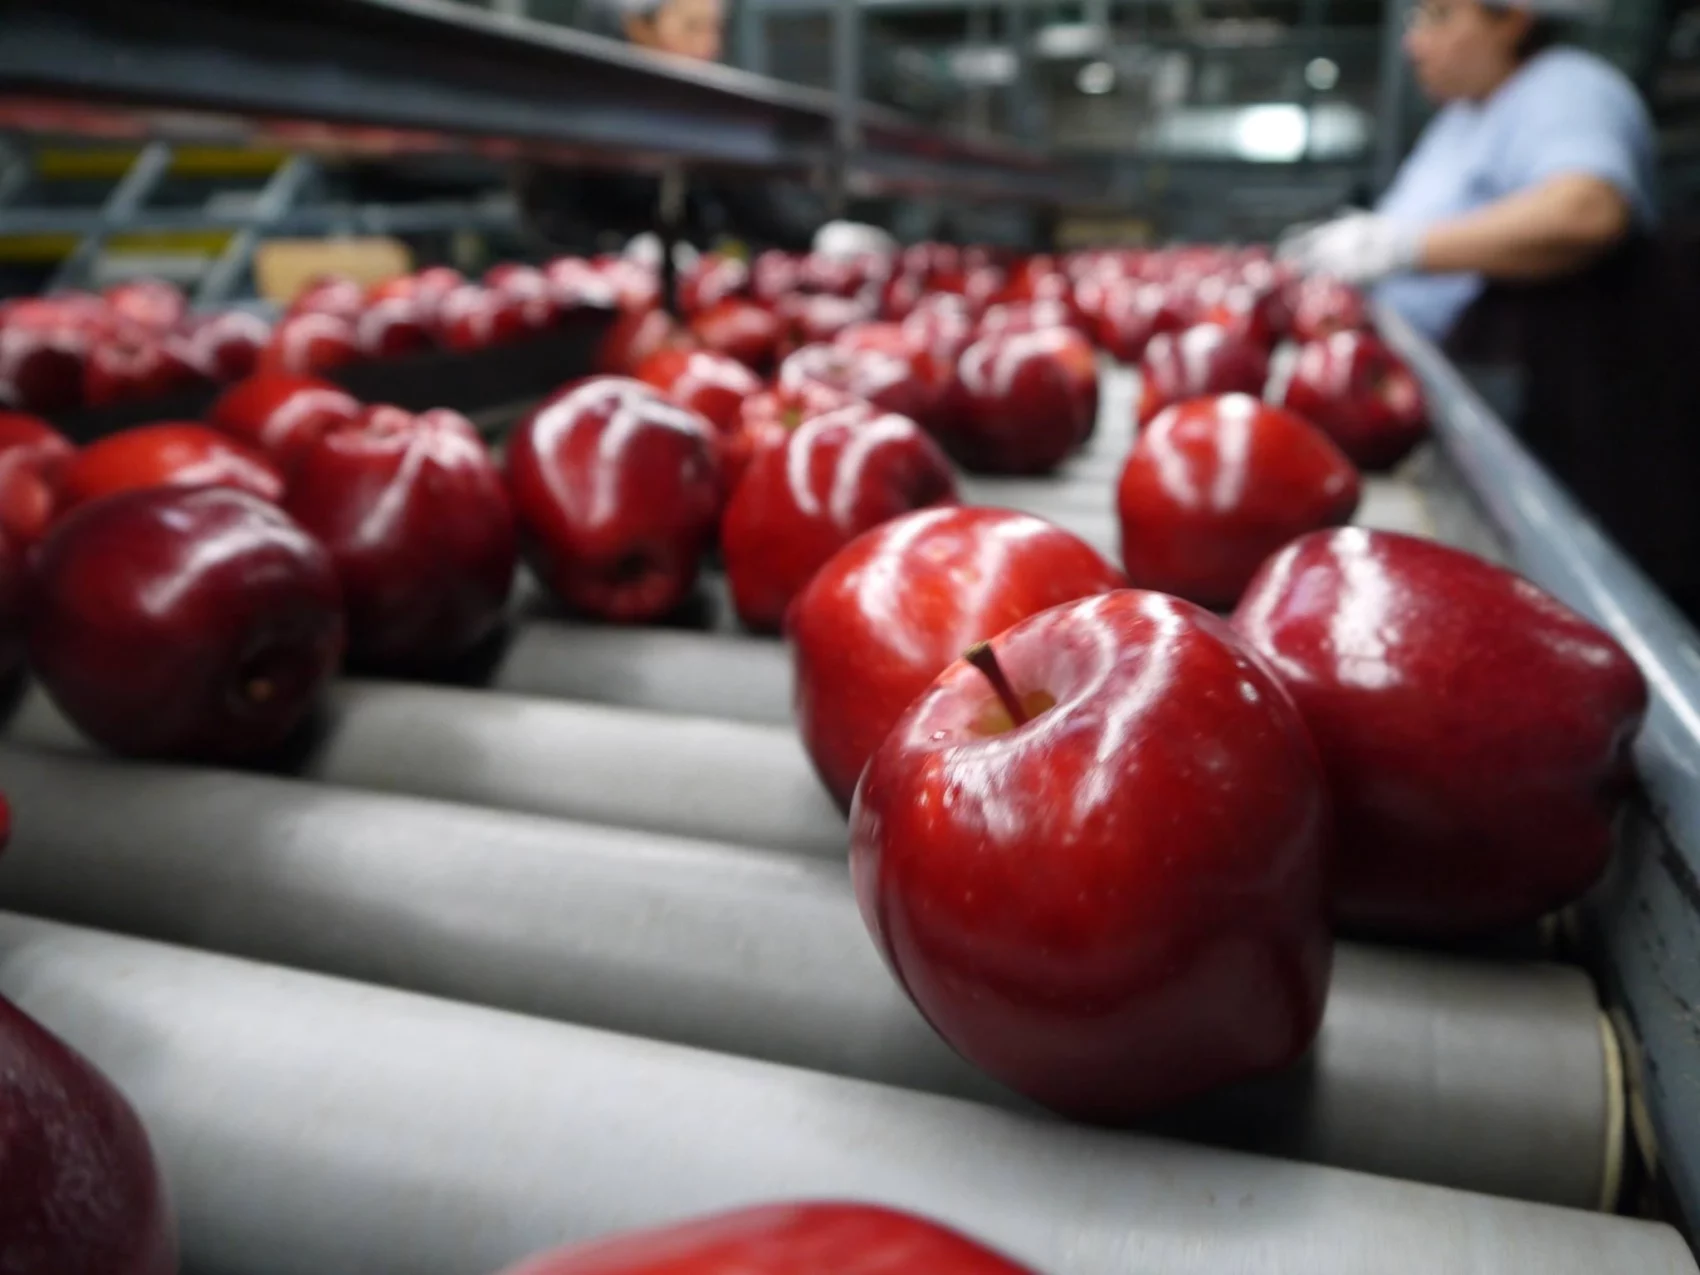 Apples on a conveyor belt at Sage Fruit.